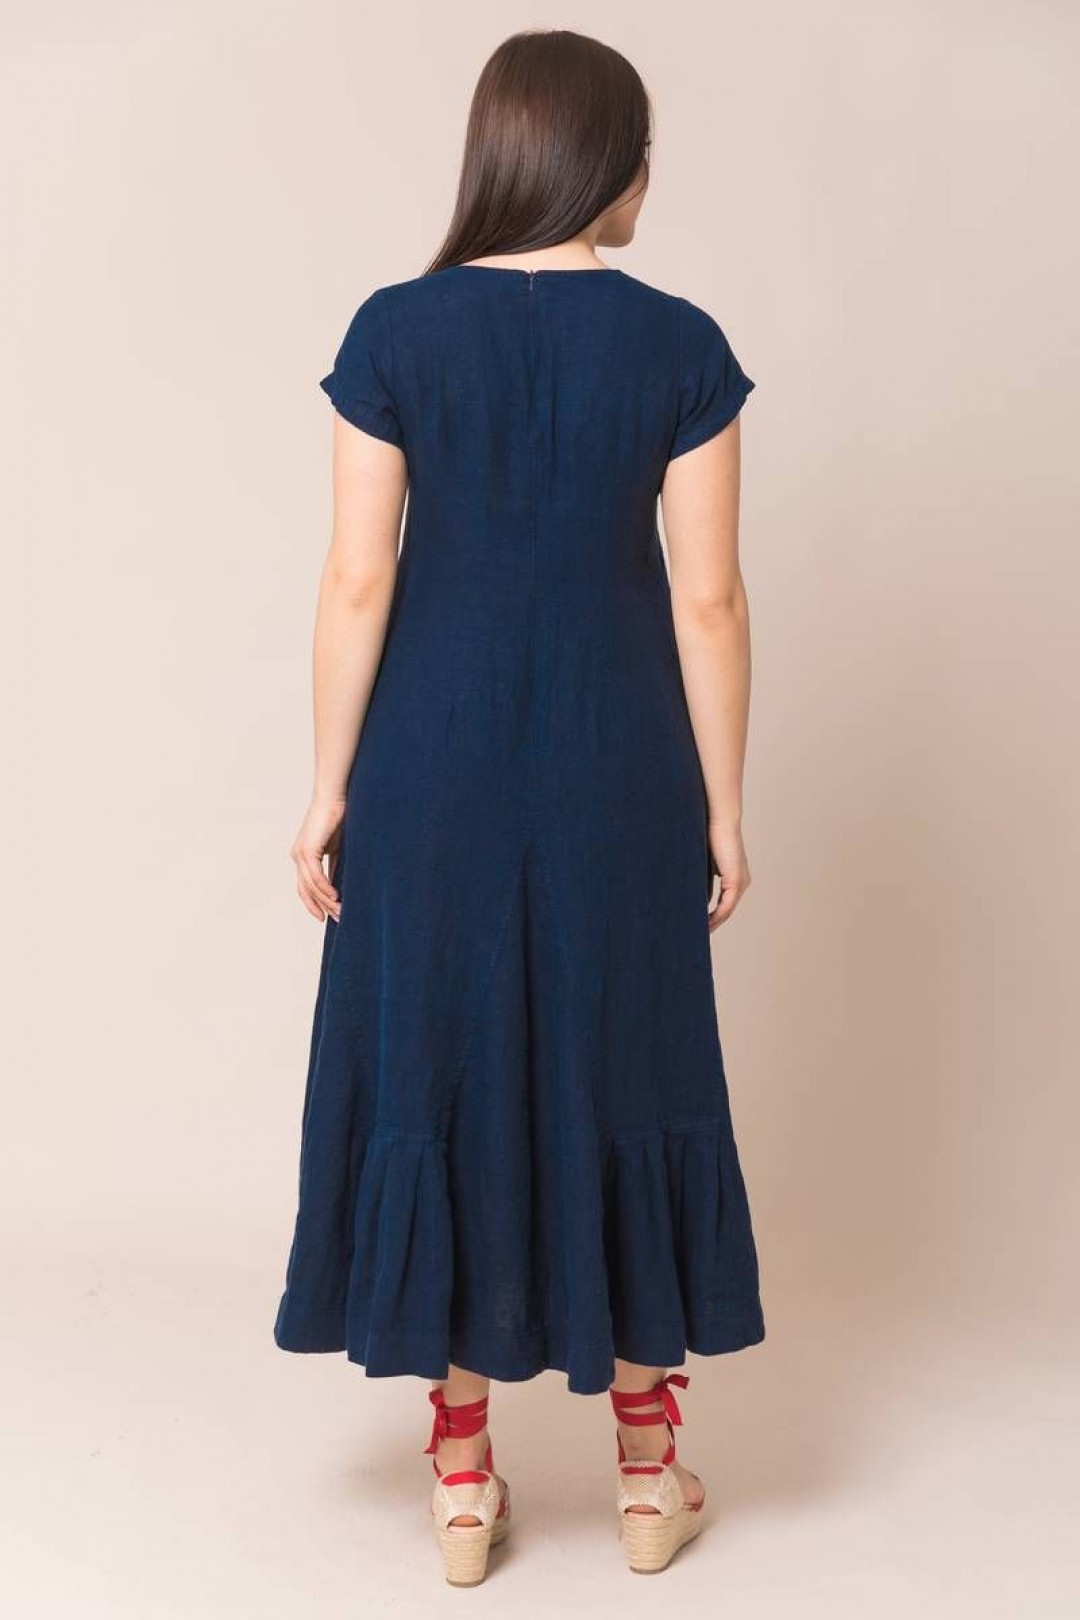 Платье Ружана 318-2 темно-синий